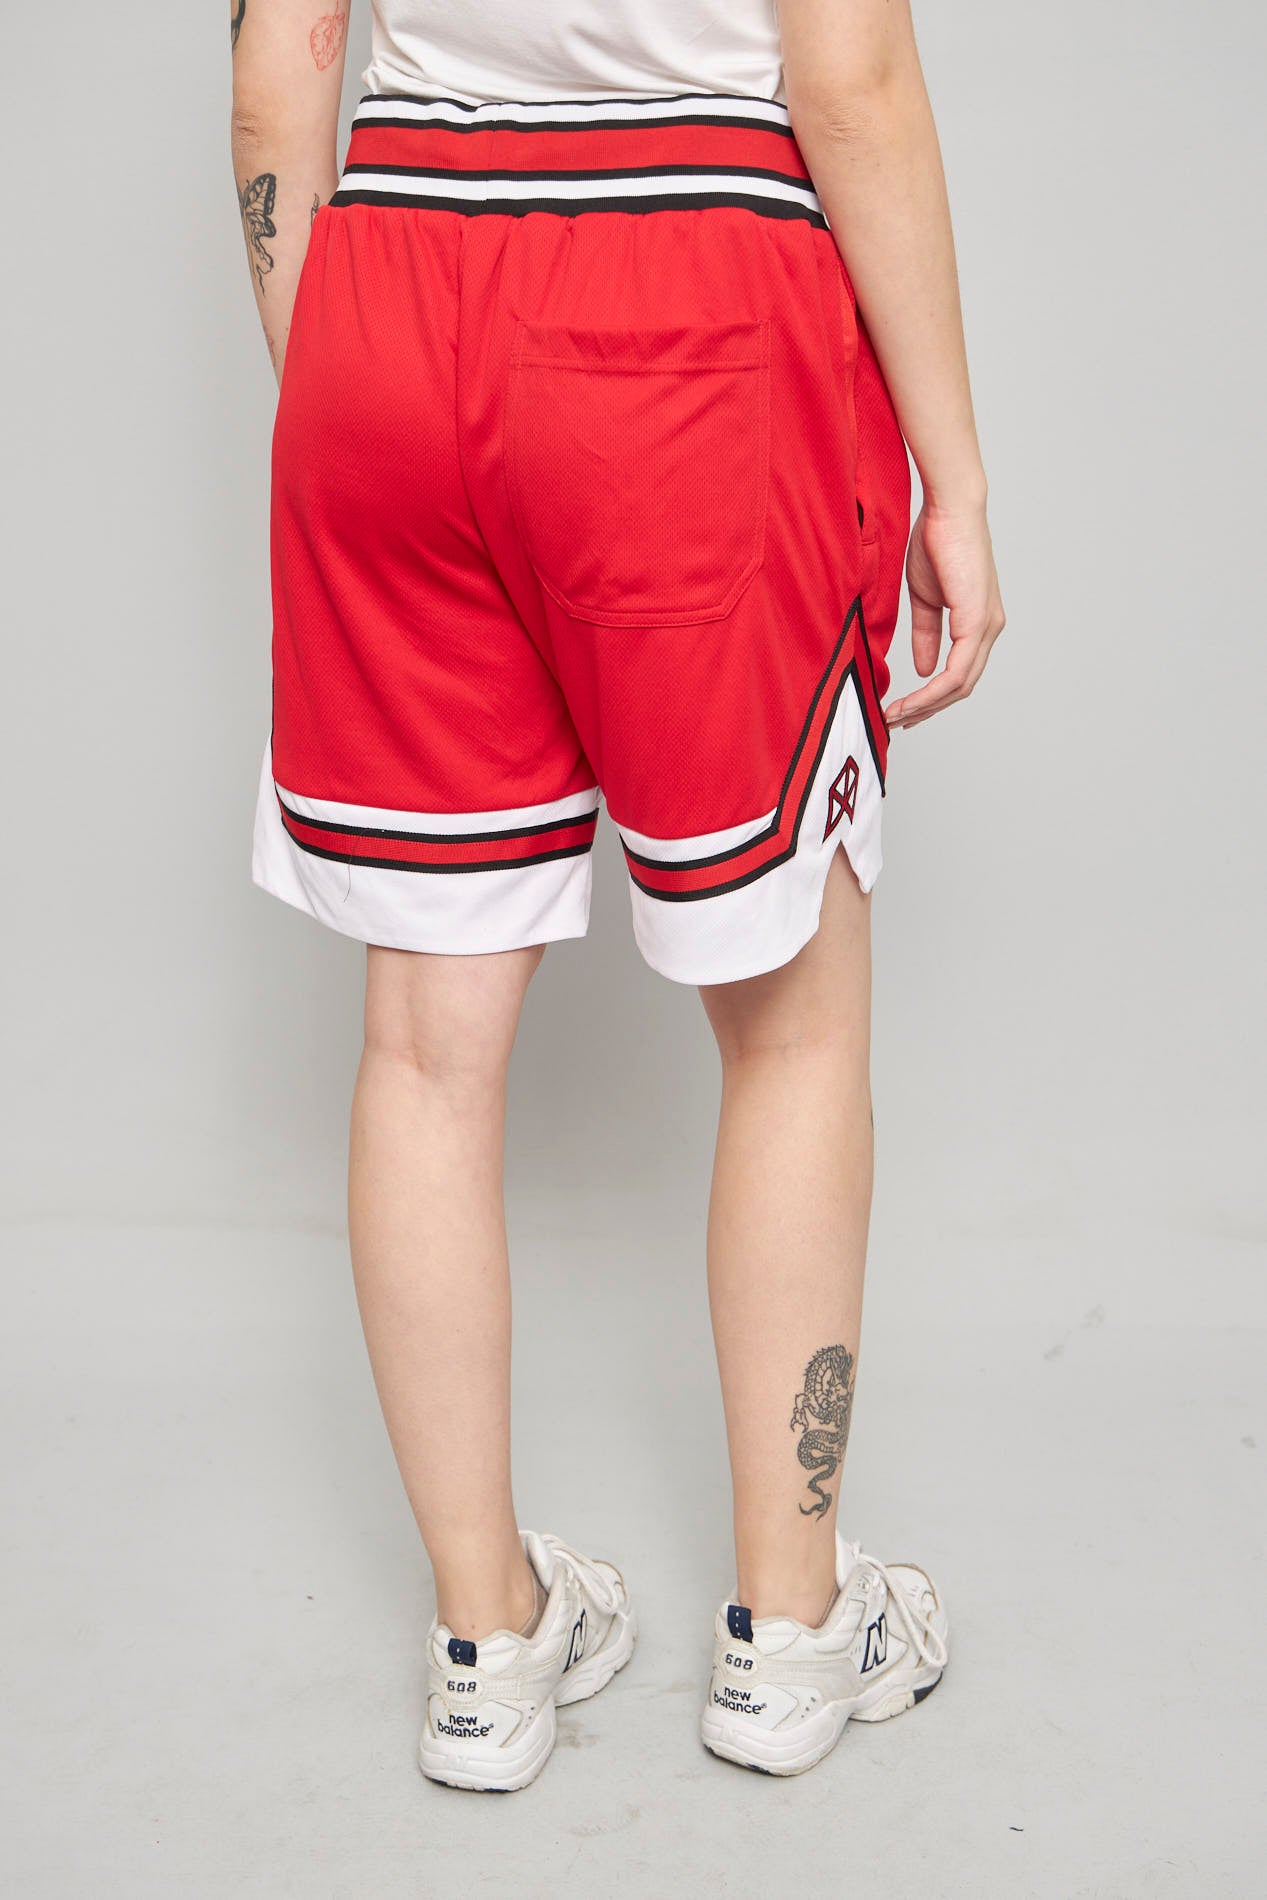 Shorts casual  rojo rawgear talla L 308